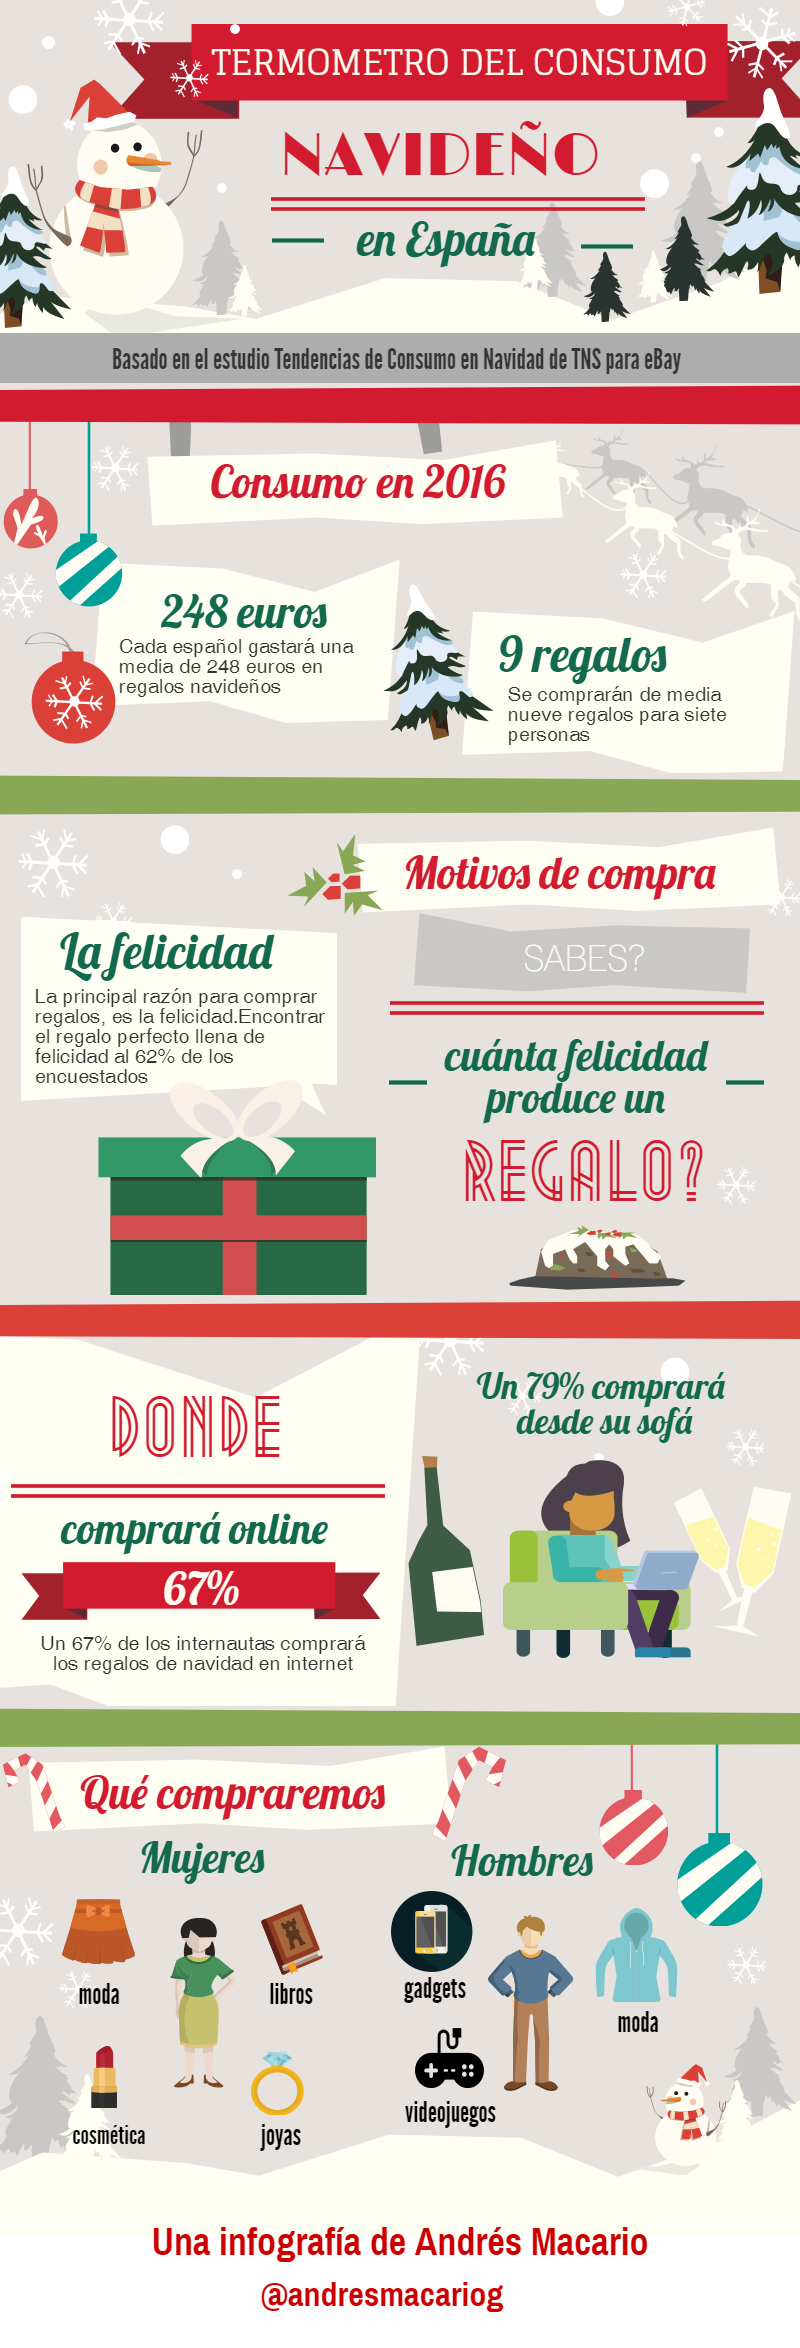 Termometro del consumo navideño en España- Infografia Andres Macario